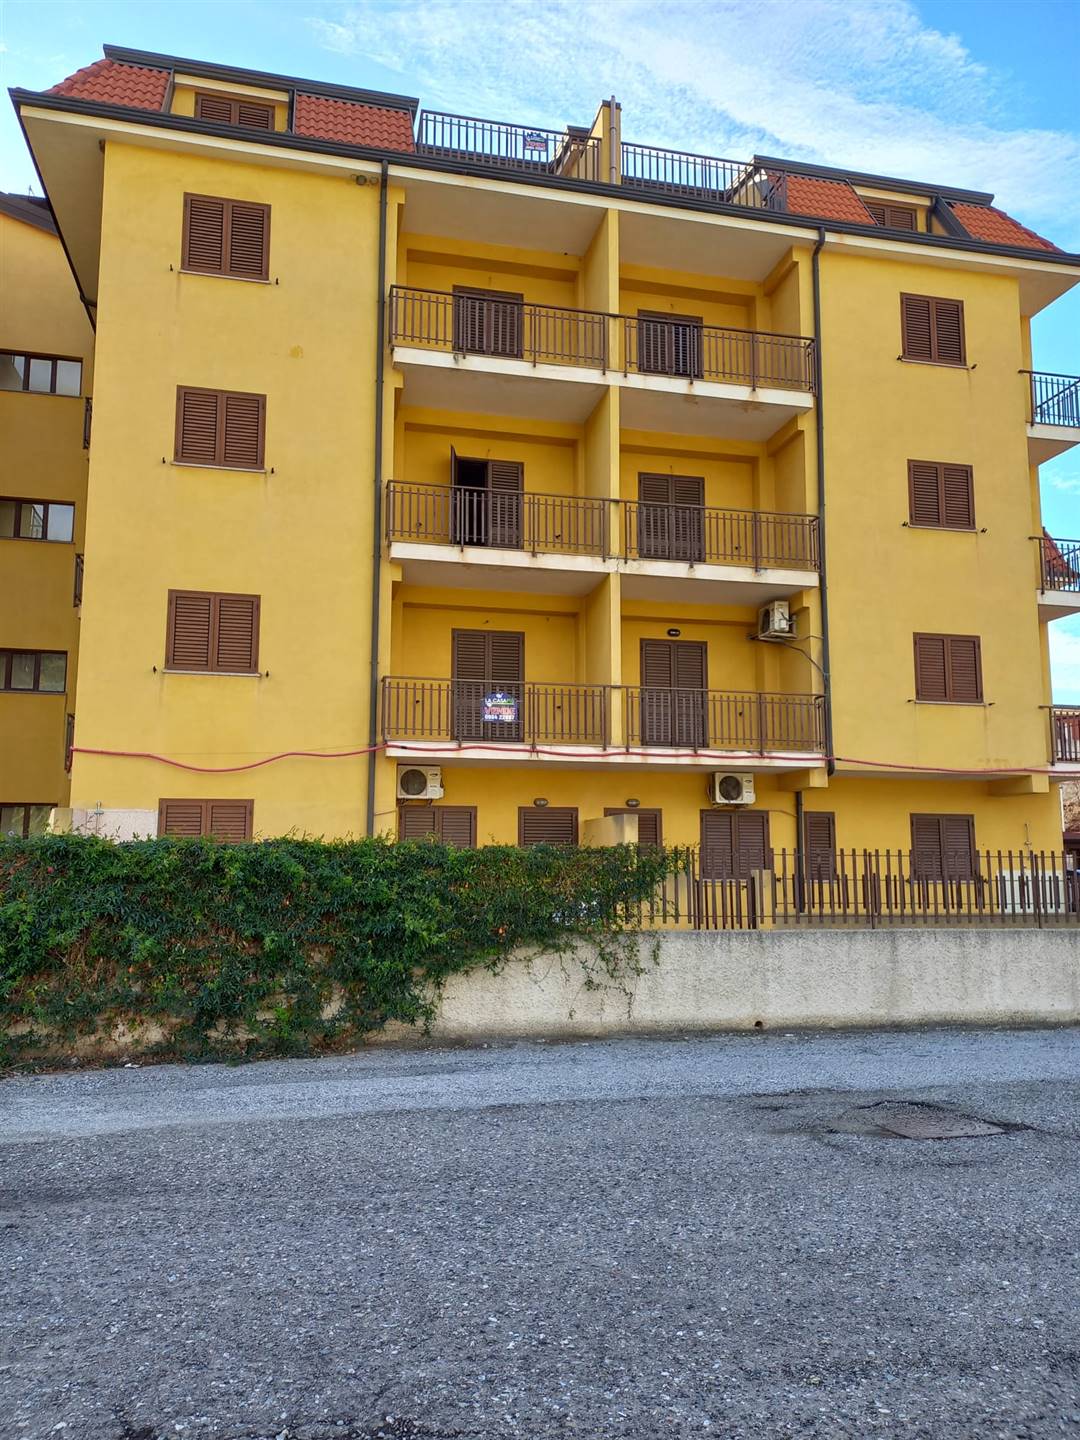 Appartamento in vendita a Nocera Terinese, 4 locali, zona Località: MARINA DI NOCERA TERINESE, prezzo € 56.000 | CambioCasa.it